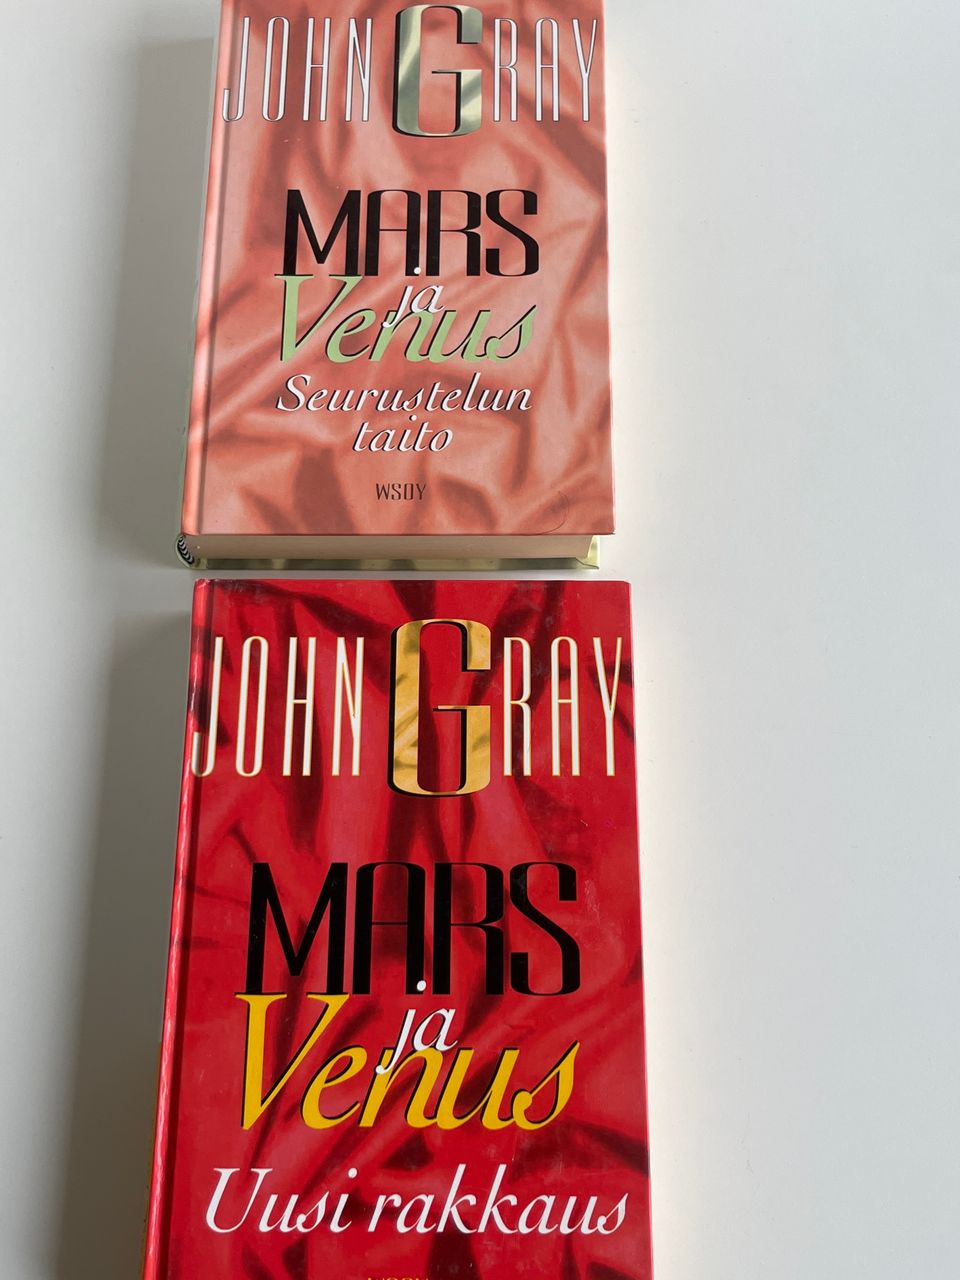 John Gray Mars ja Venus Uusi rakkaus ja Seurusteluntaito.